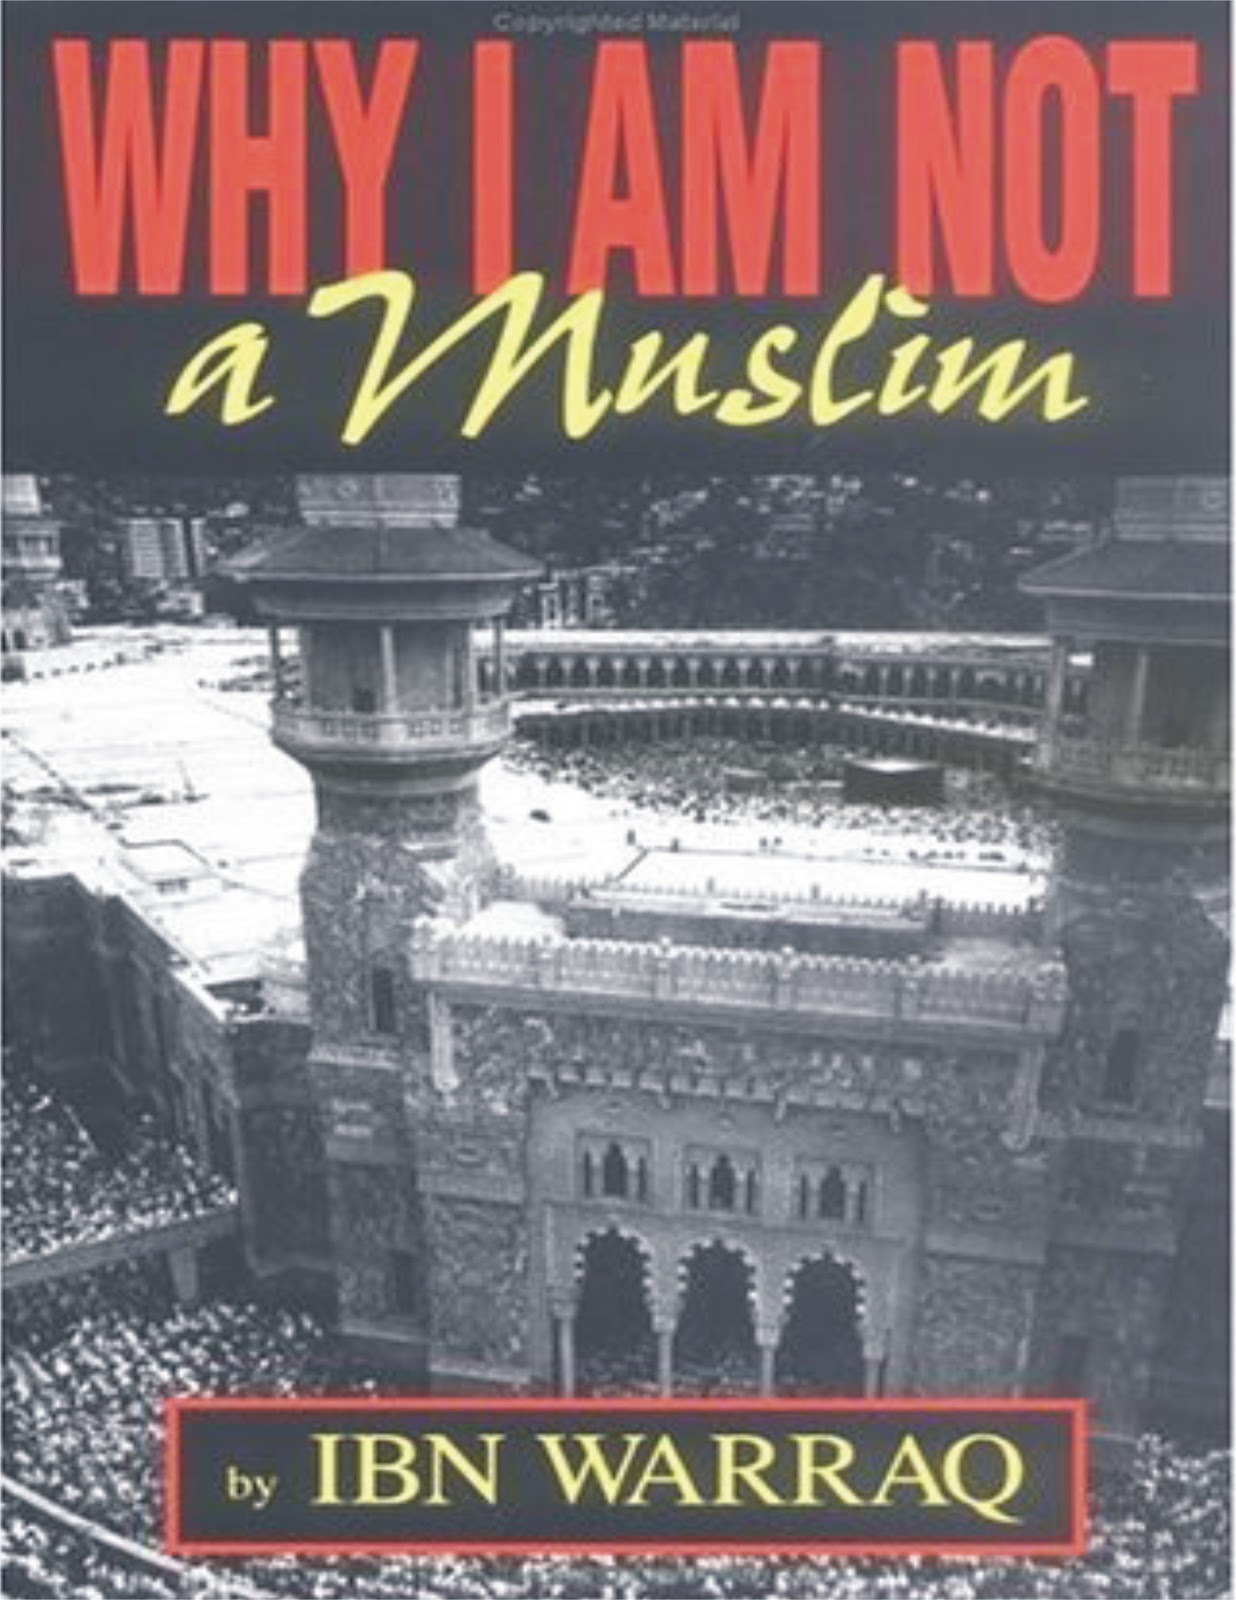 Dalam membaca buku ini perlu dibedakan betul antara teori dan praktek perbedaan tentang apa yang harus dilakukan Muslim dan apa yang mereka lakukan dalam